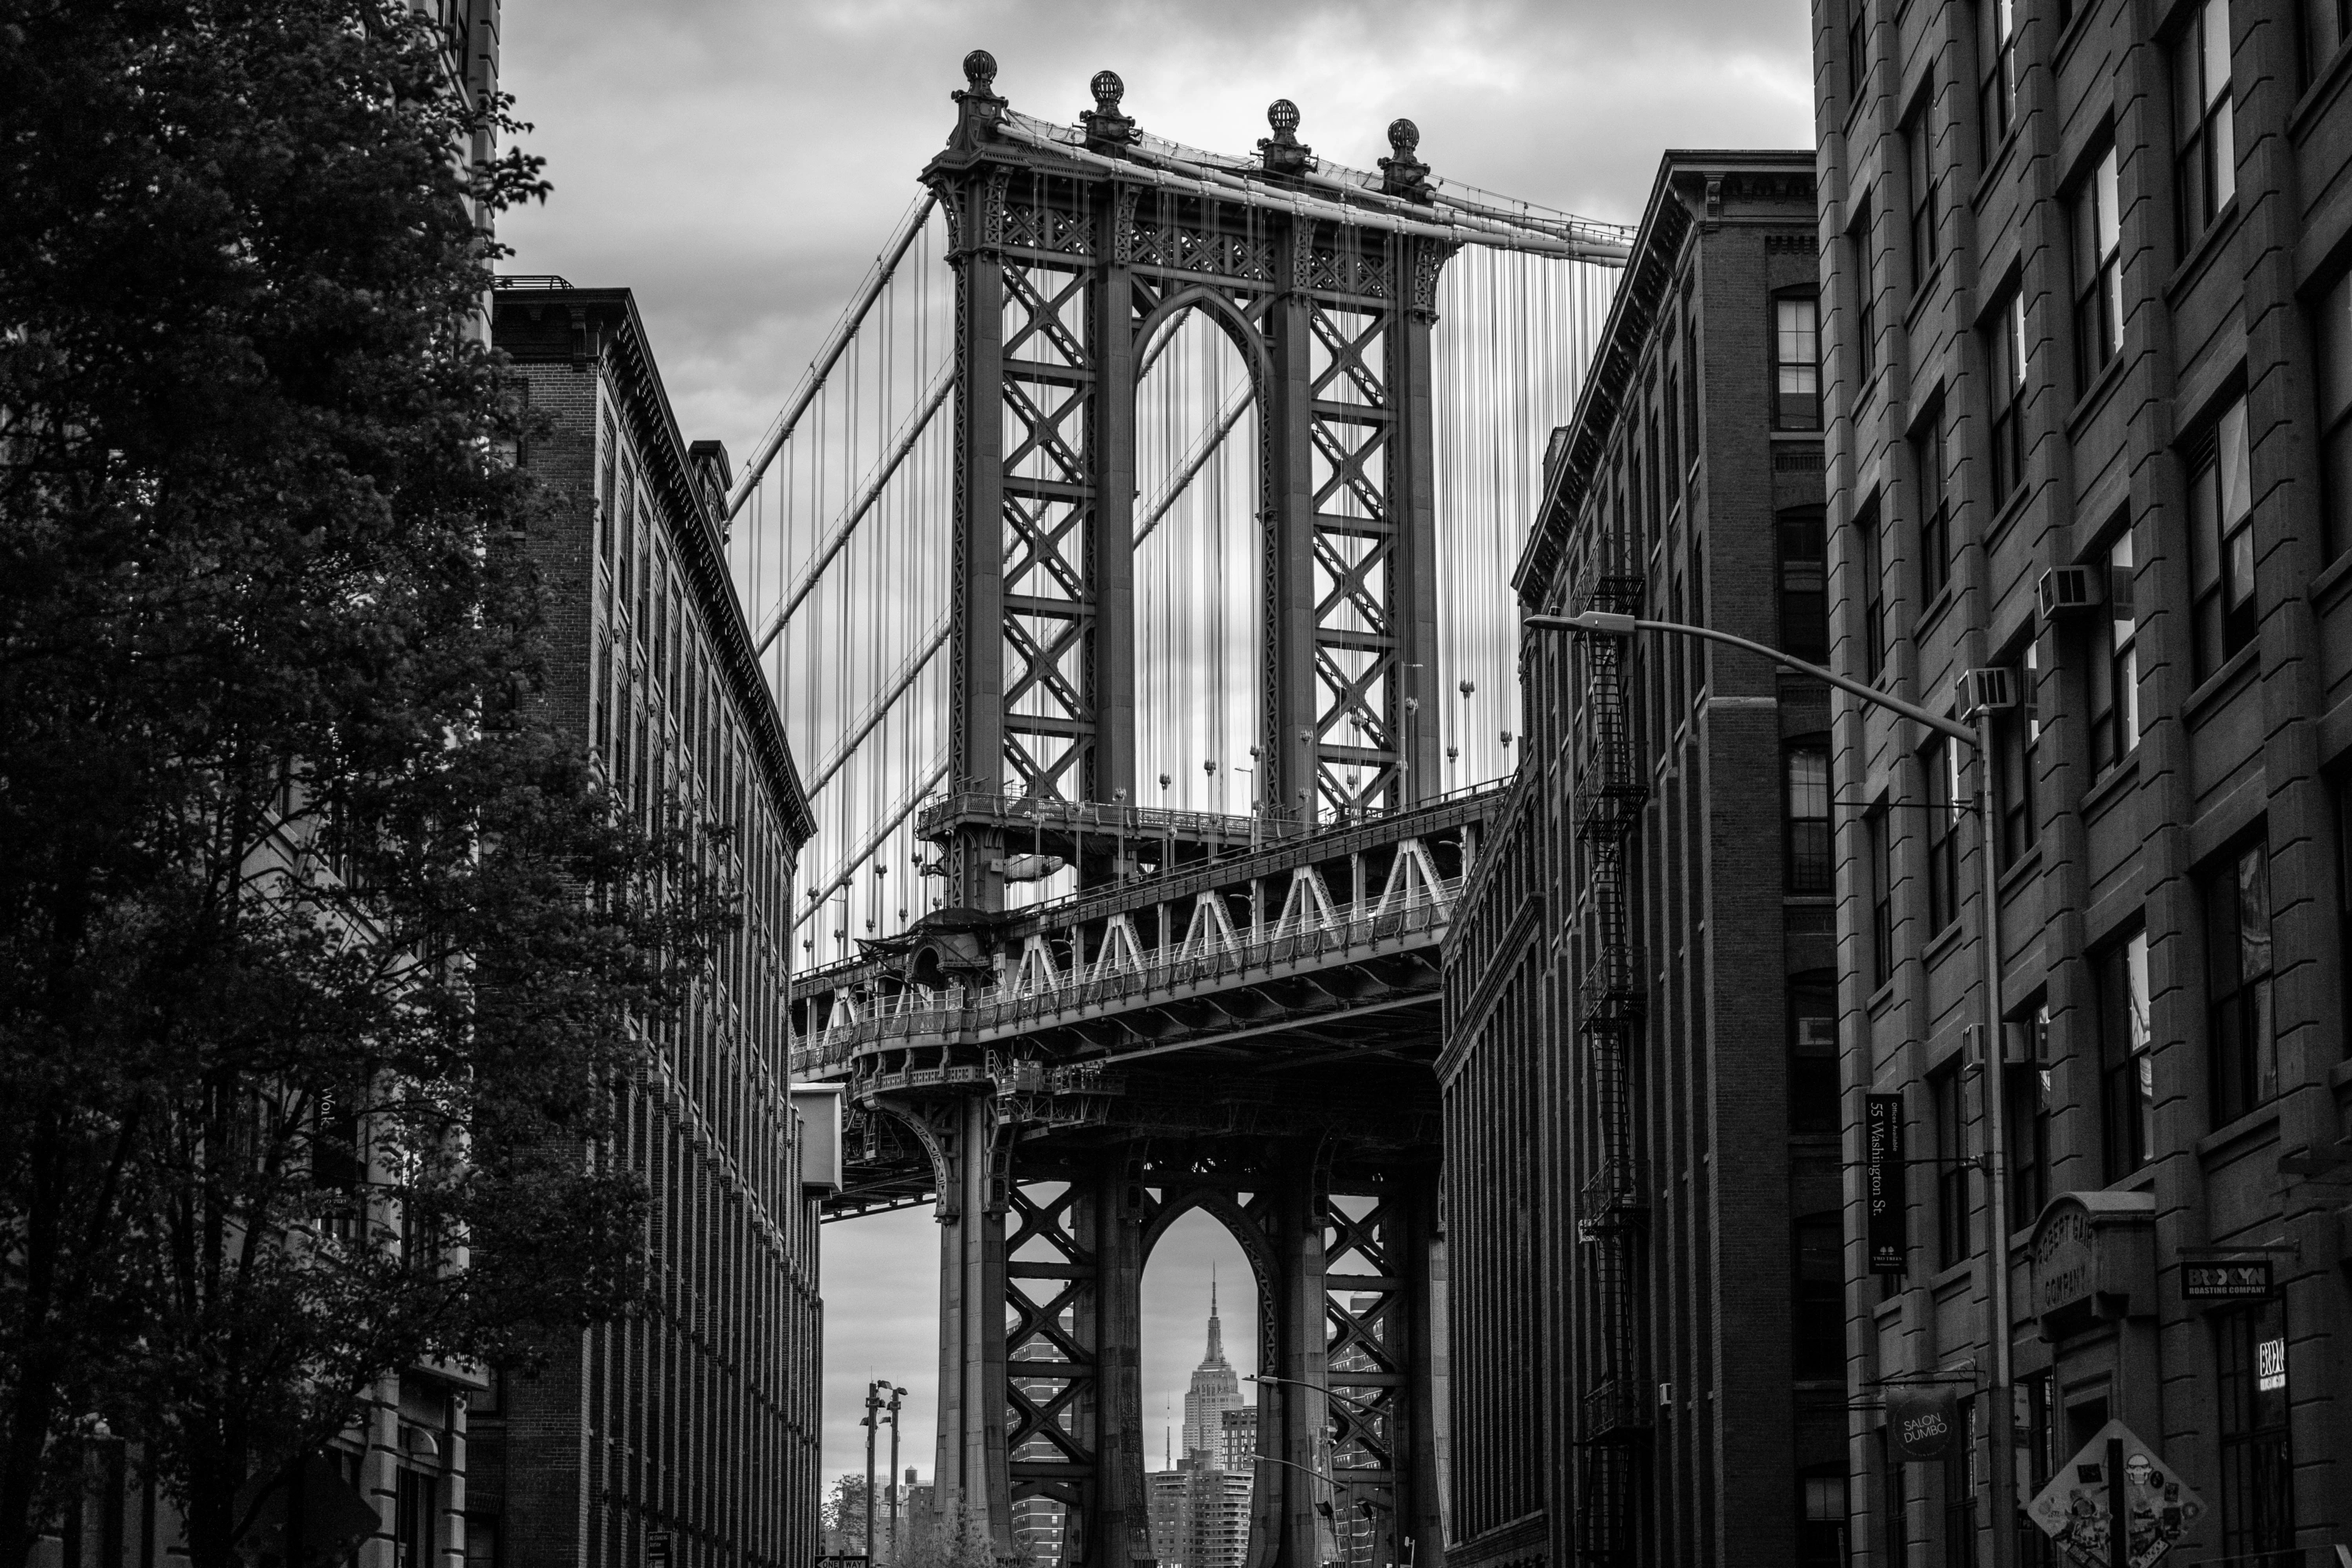 New York Dumbo viewing the Manhattan Bridge